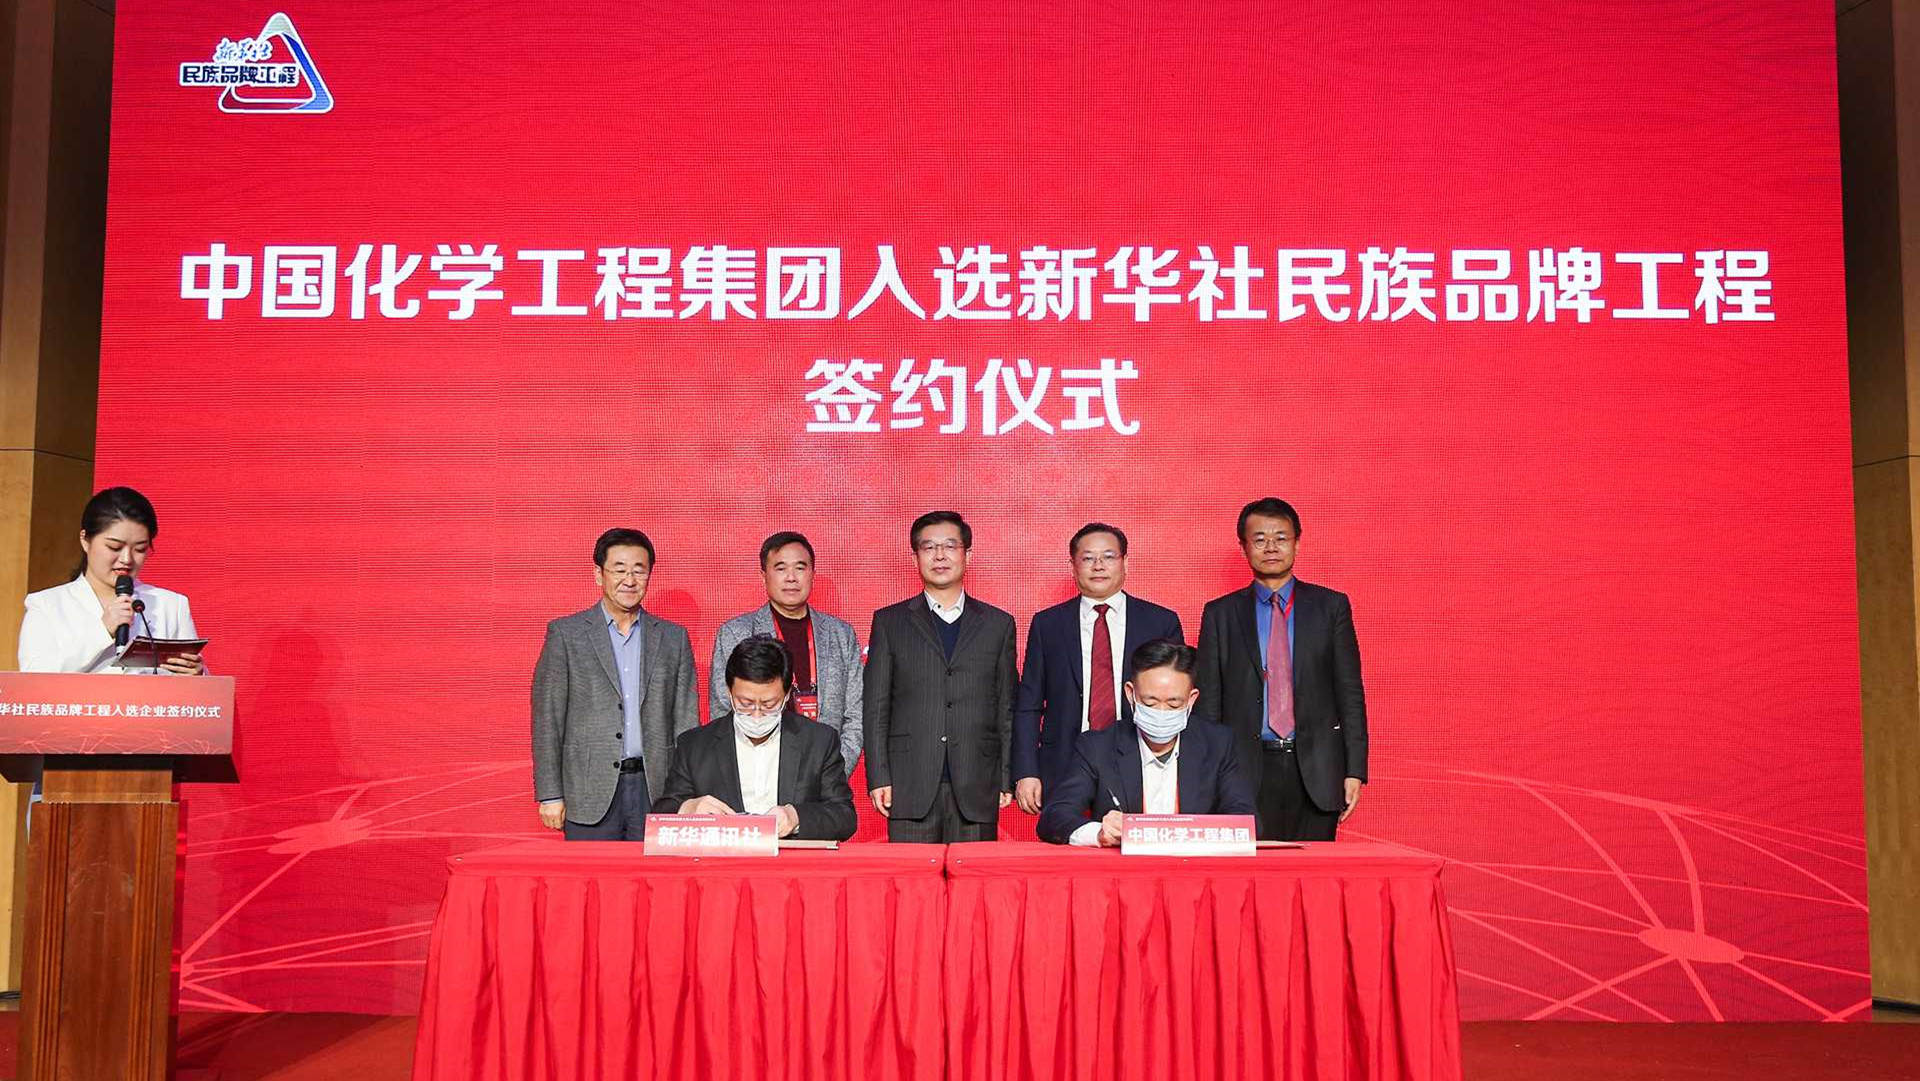 中国化学工程集团、新华社新闻信息双方代表签约